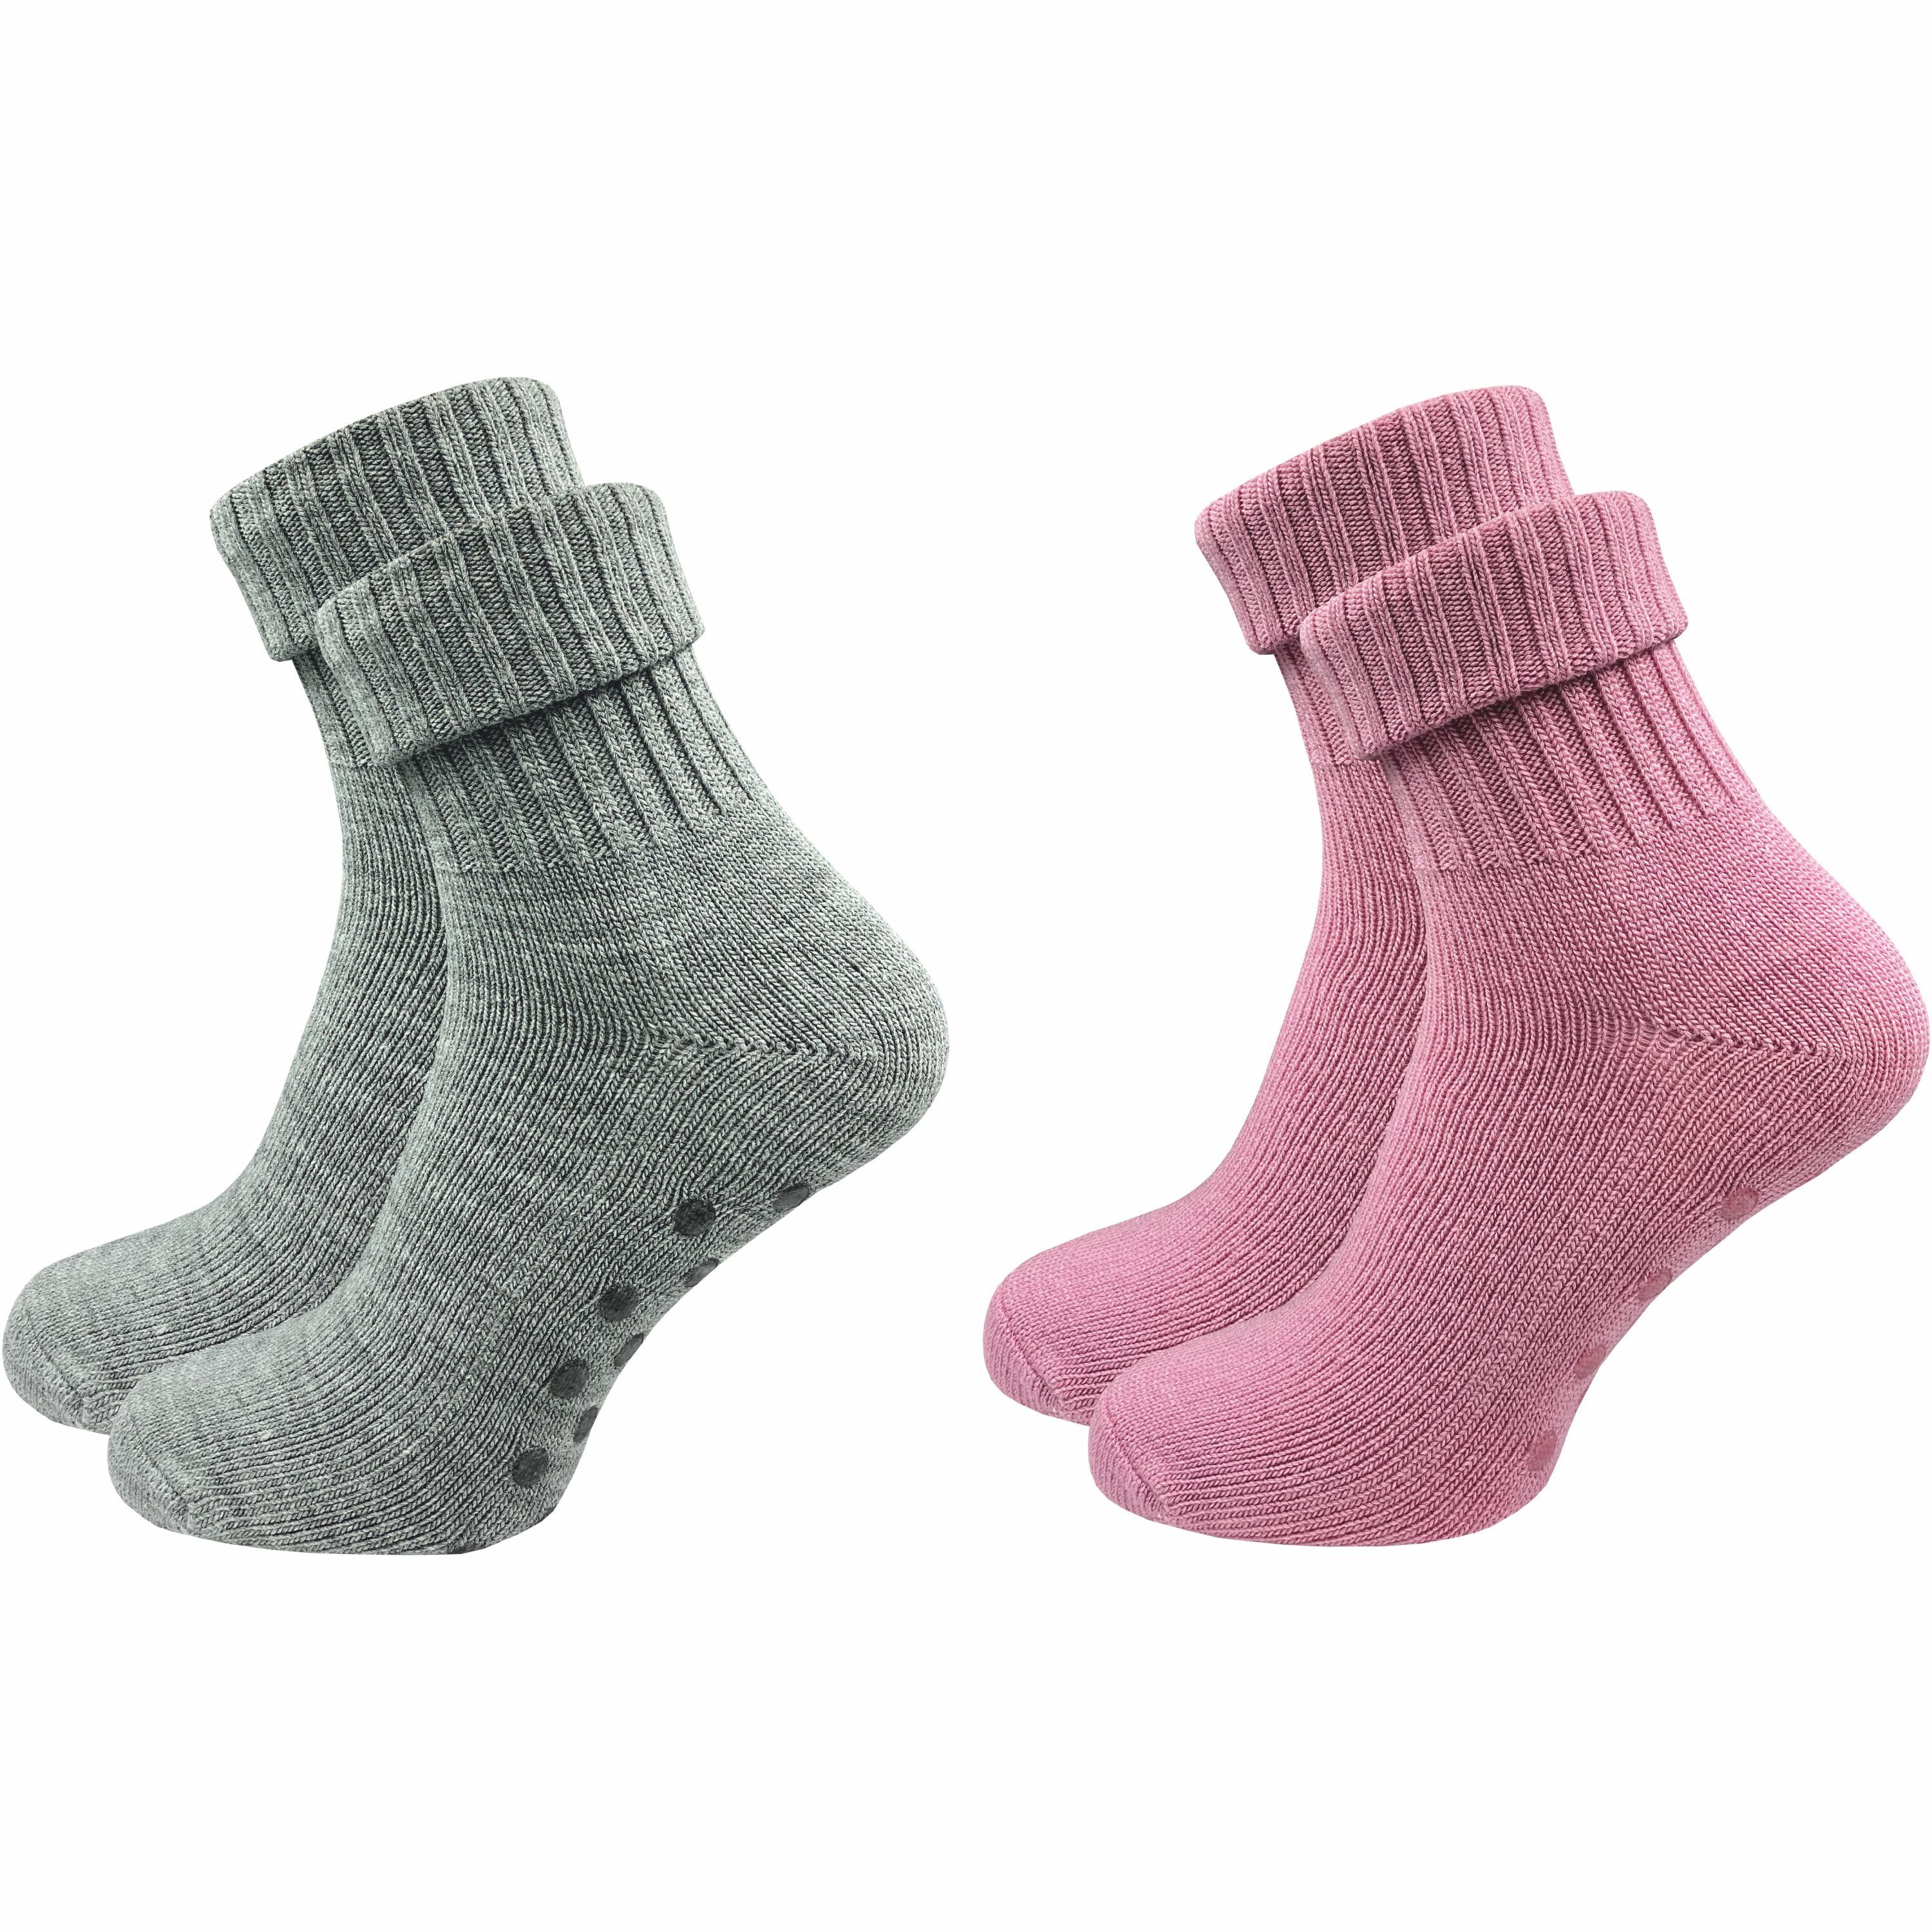 GAWILO ABS-Socken für Damen aus Wolle für extra warme Füße, Stoppersocken (2 Paar) Rutschfeste Hausschuhsocken, Weiche & kuschlige Socken mit Noppen rosa & hellgrau | Wintersocken